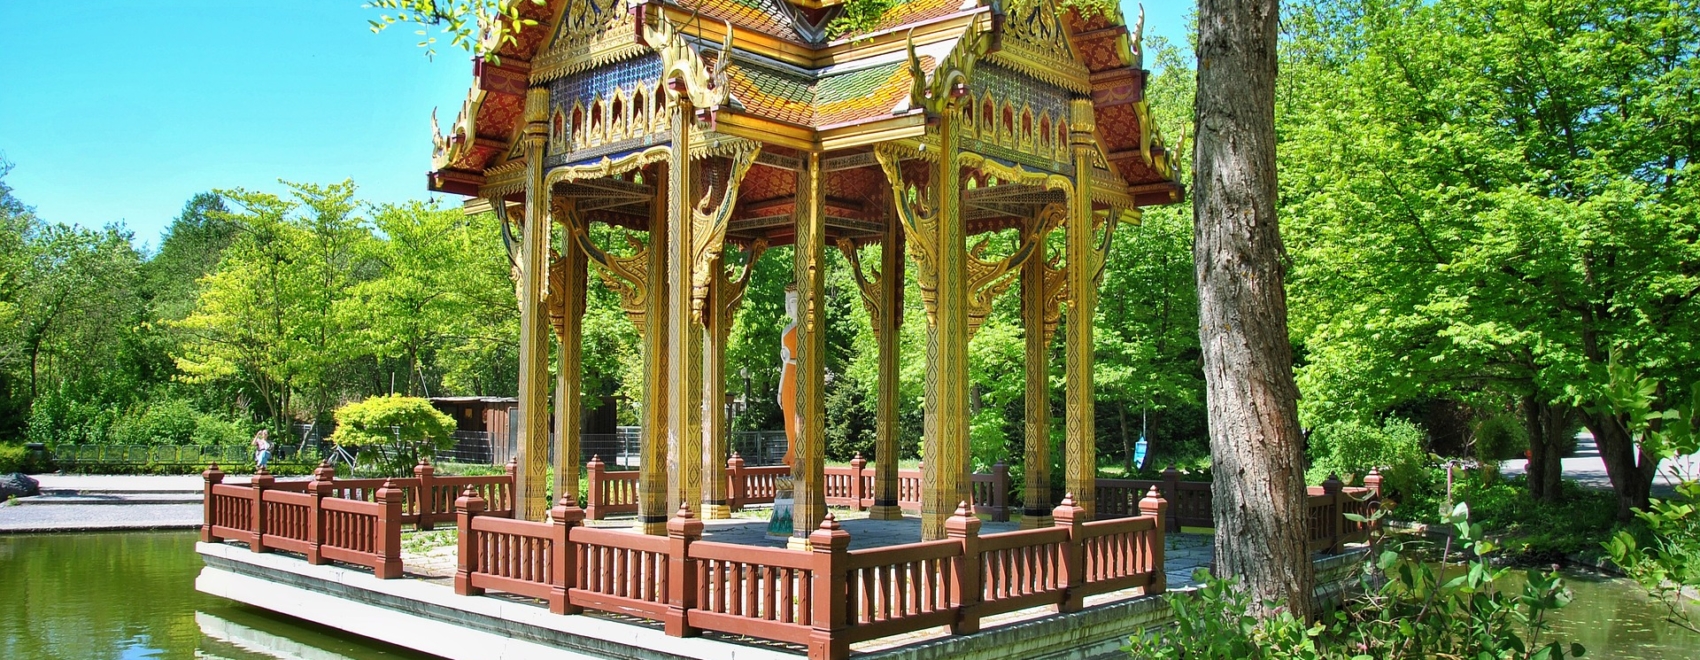 Thailändische Pagode im Westpark, München